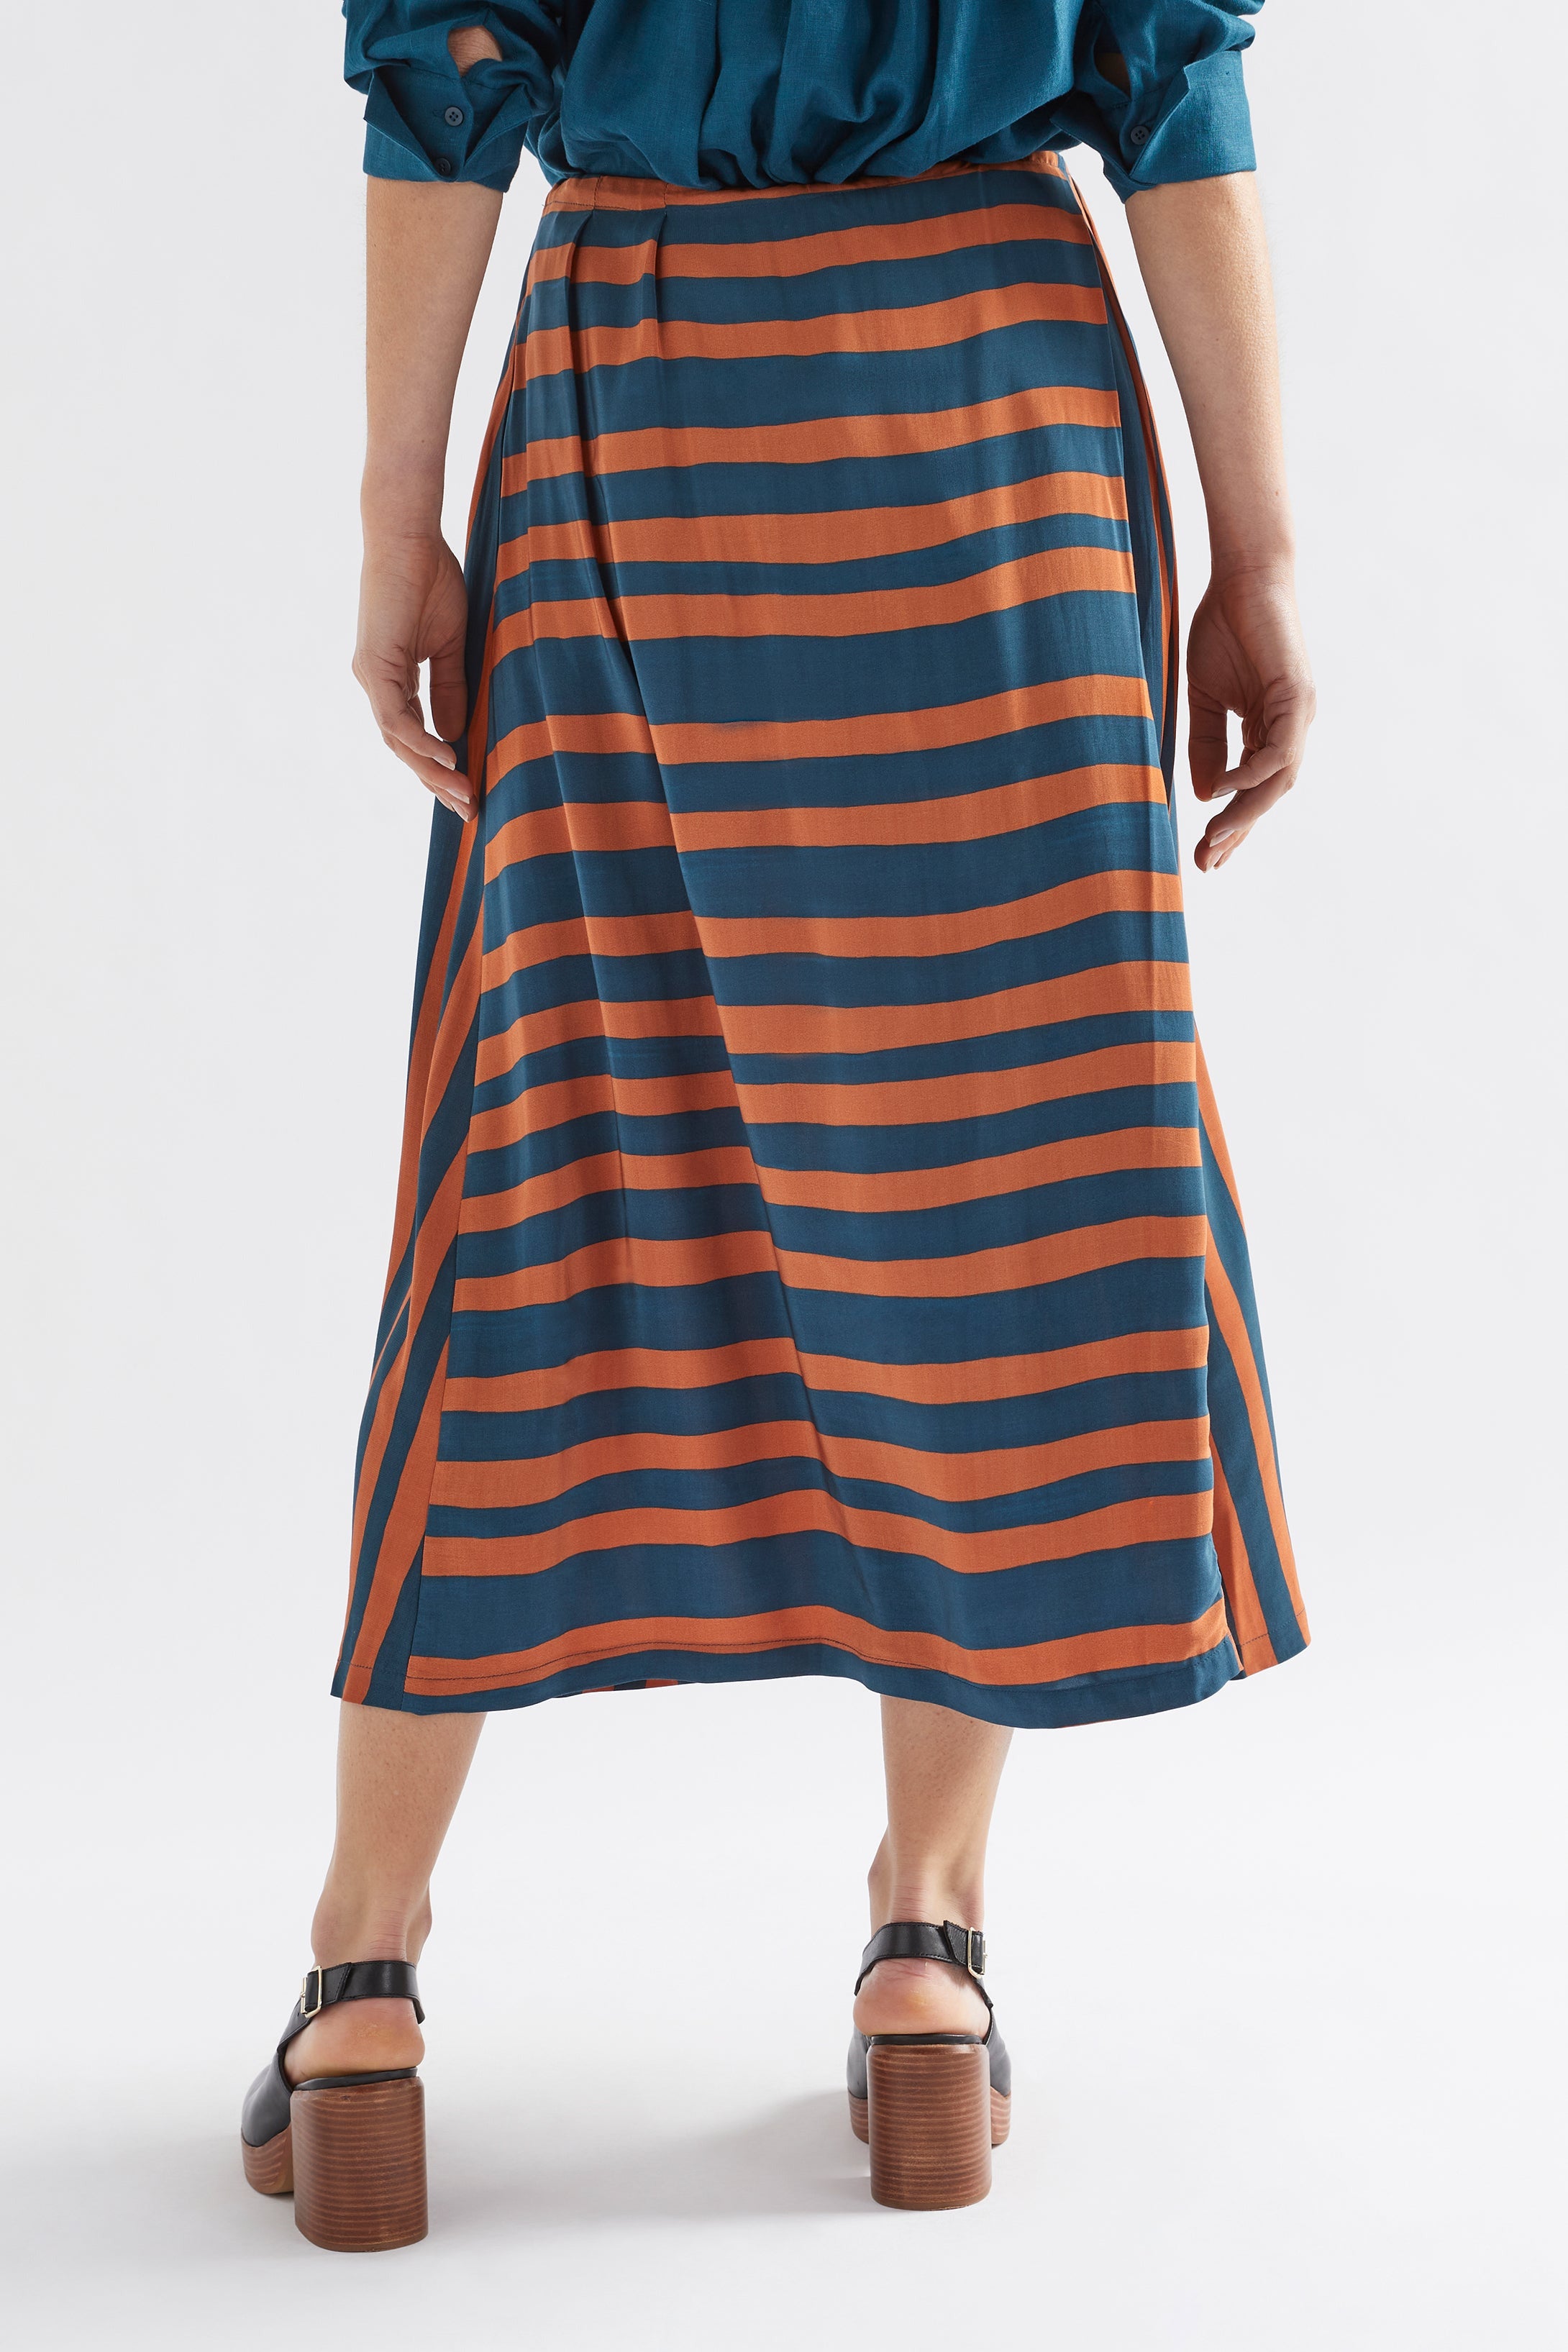 Tilbe Skirt - Bronze/Teal Paint Stripe